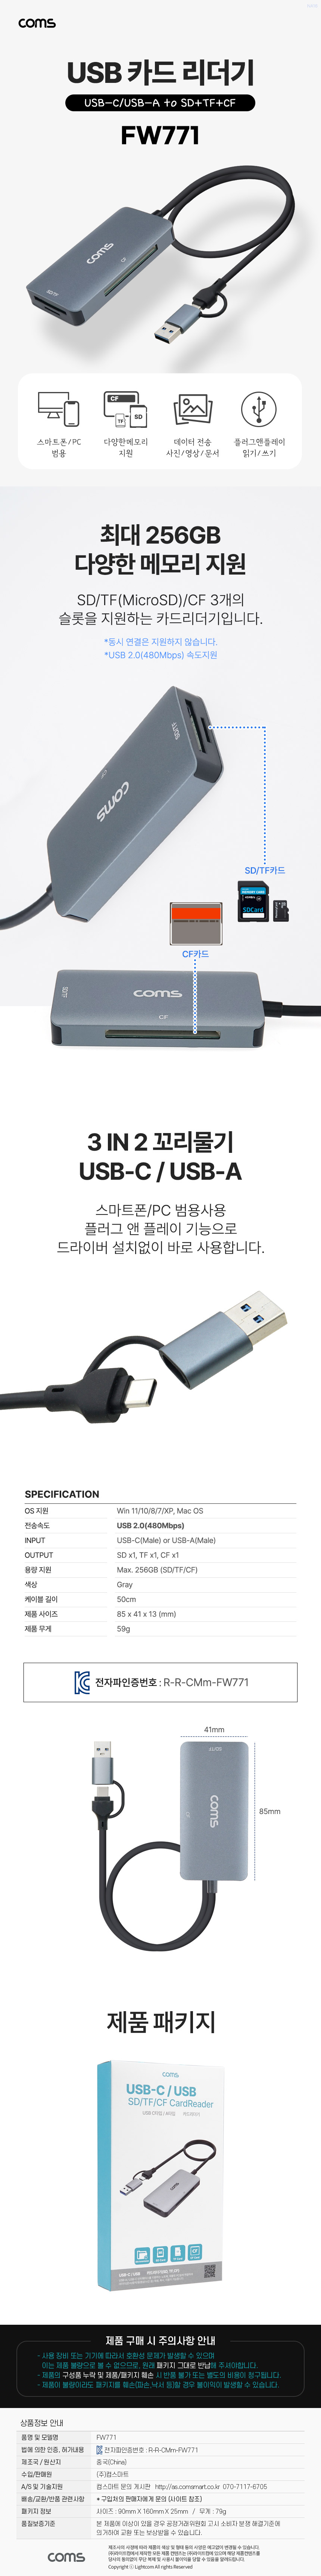 꼬리물기 카드리더기 Type C USB-C USB-A SD TF MicroSD CF카드 멀티